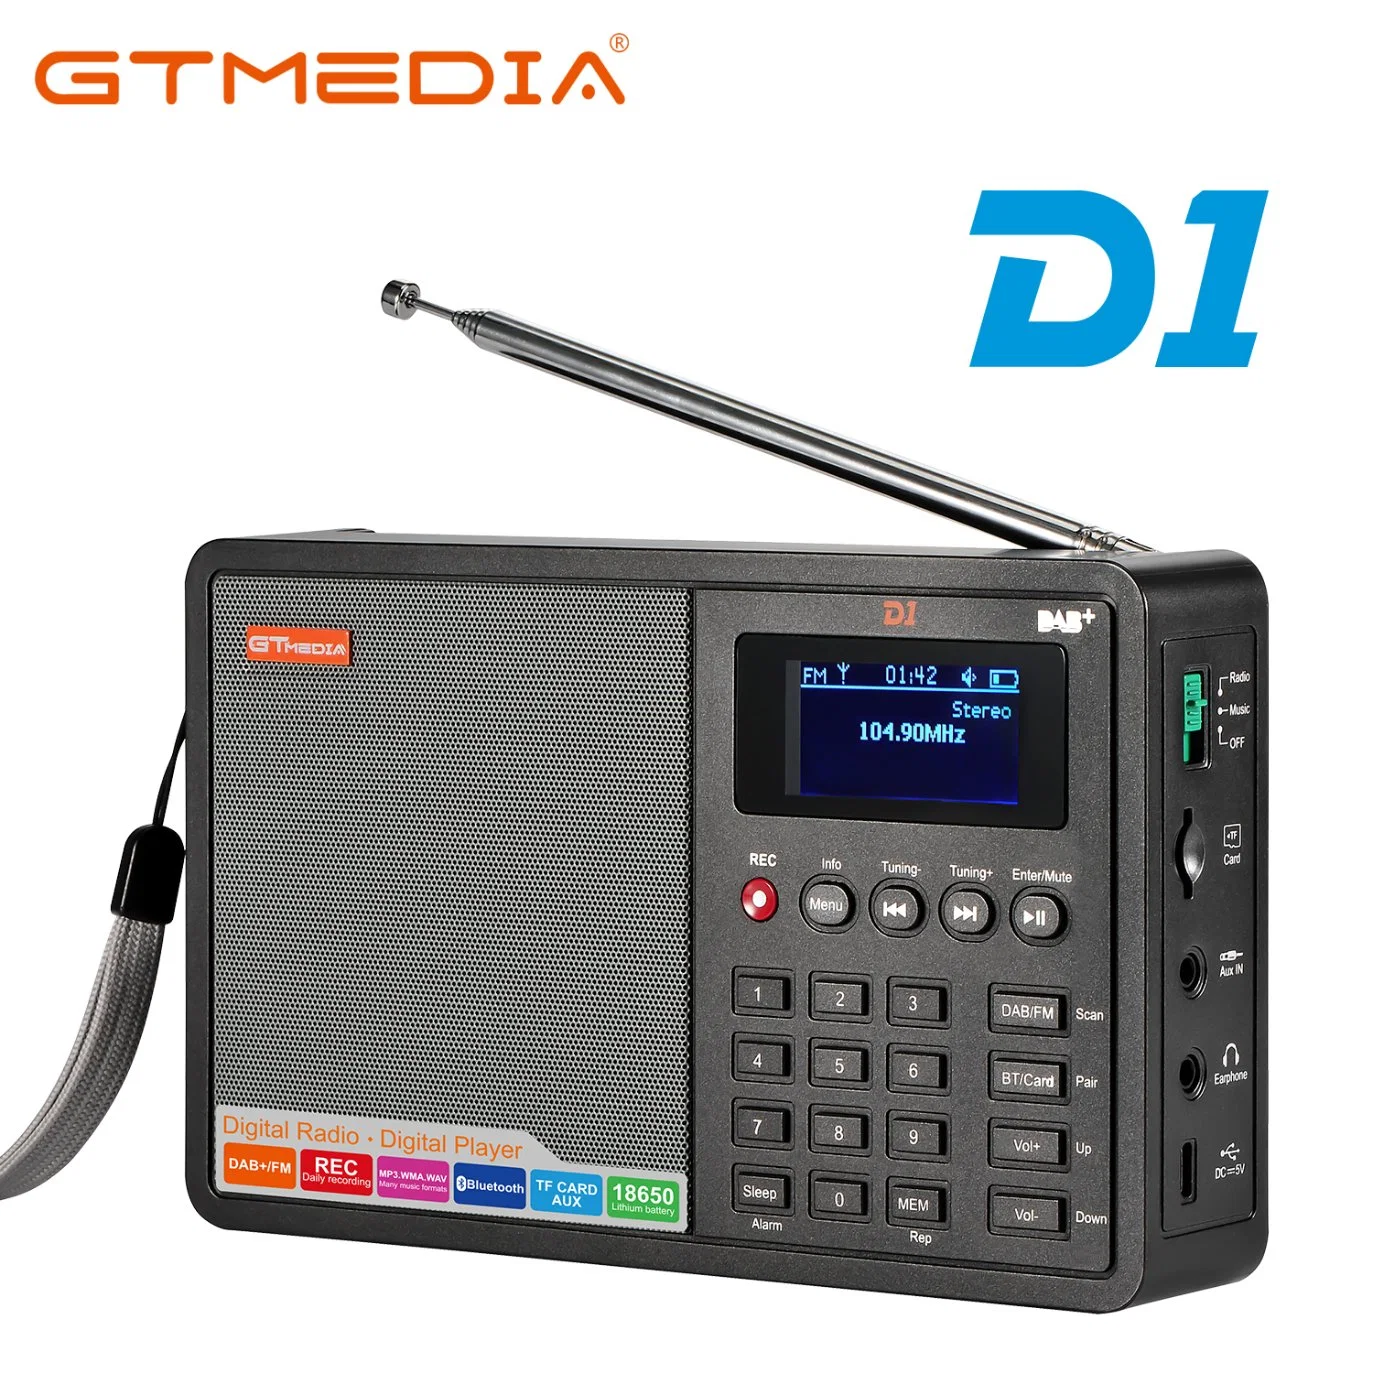 Producto original de fábrica Gtmedia D1 FM RADIO DAB Digital+Bt con pantalla LCD de 1,8 pulg.